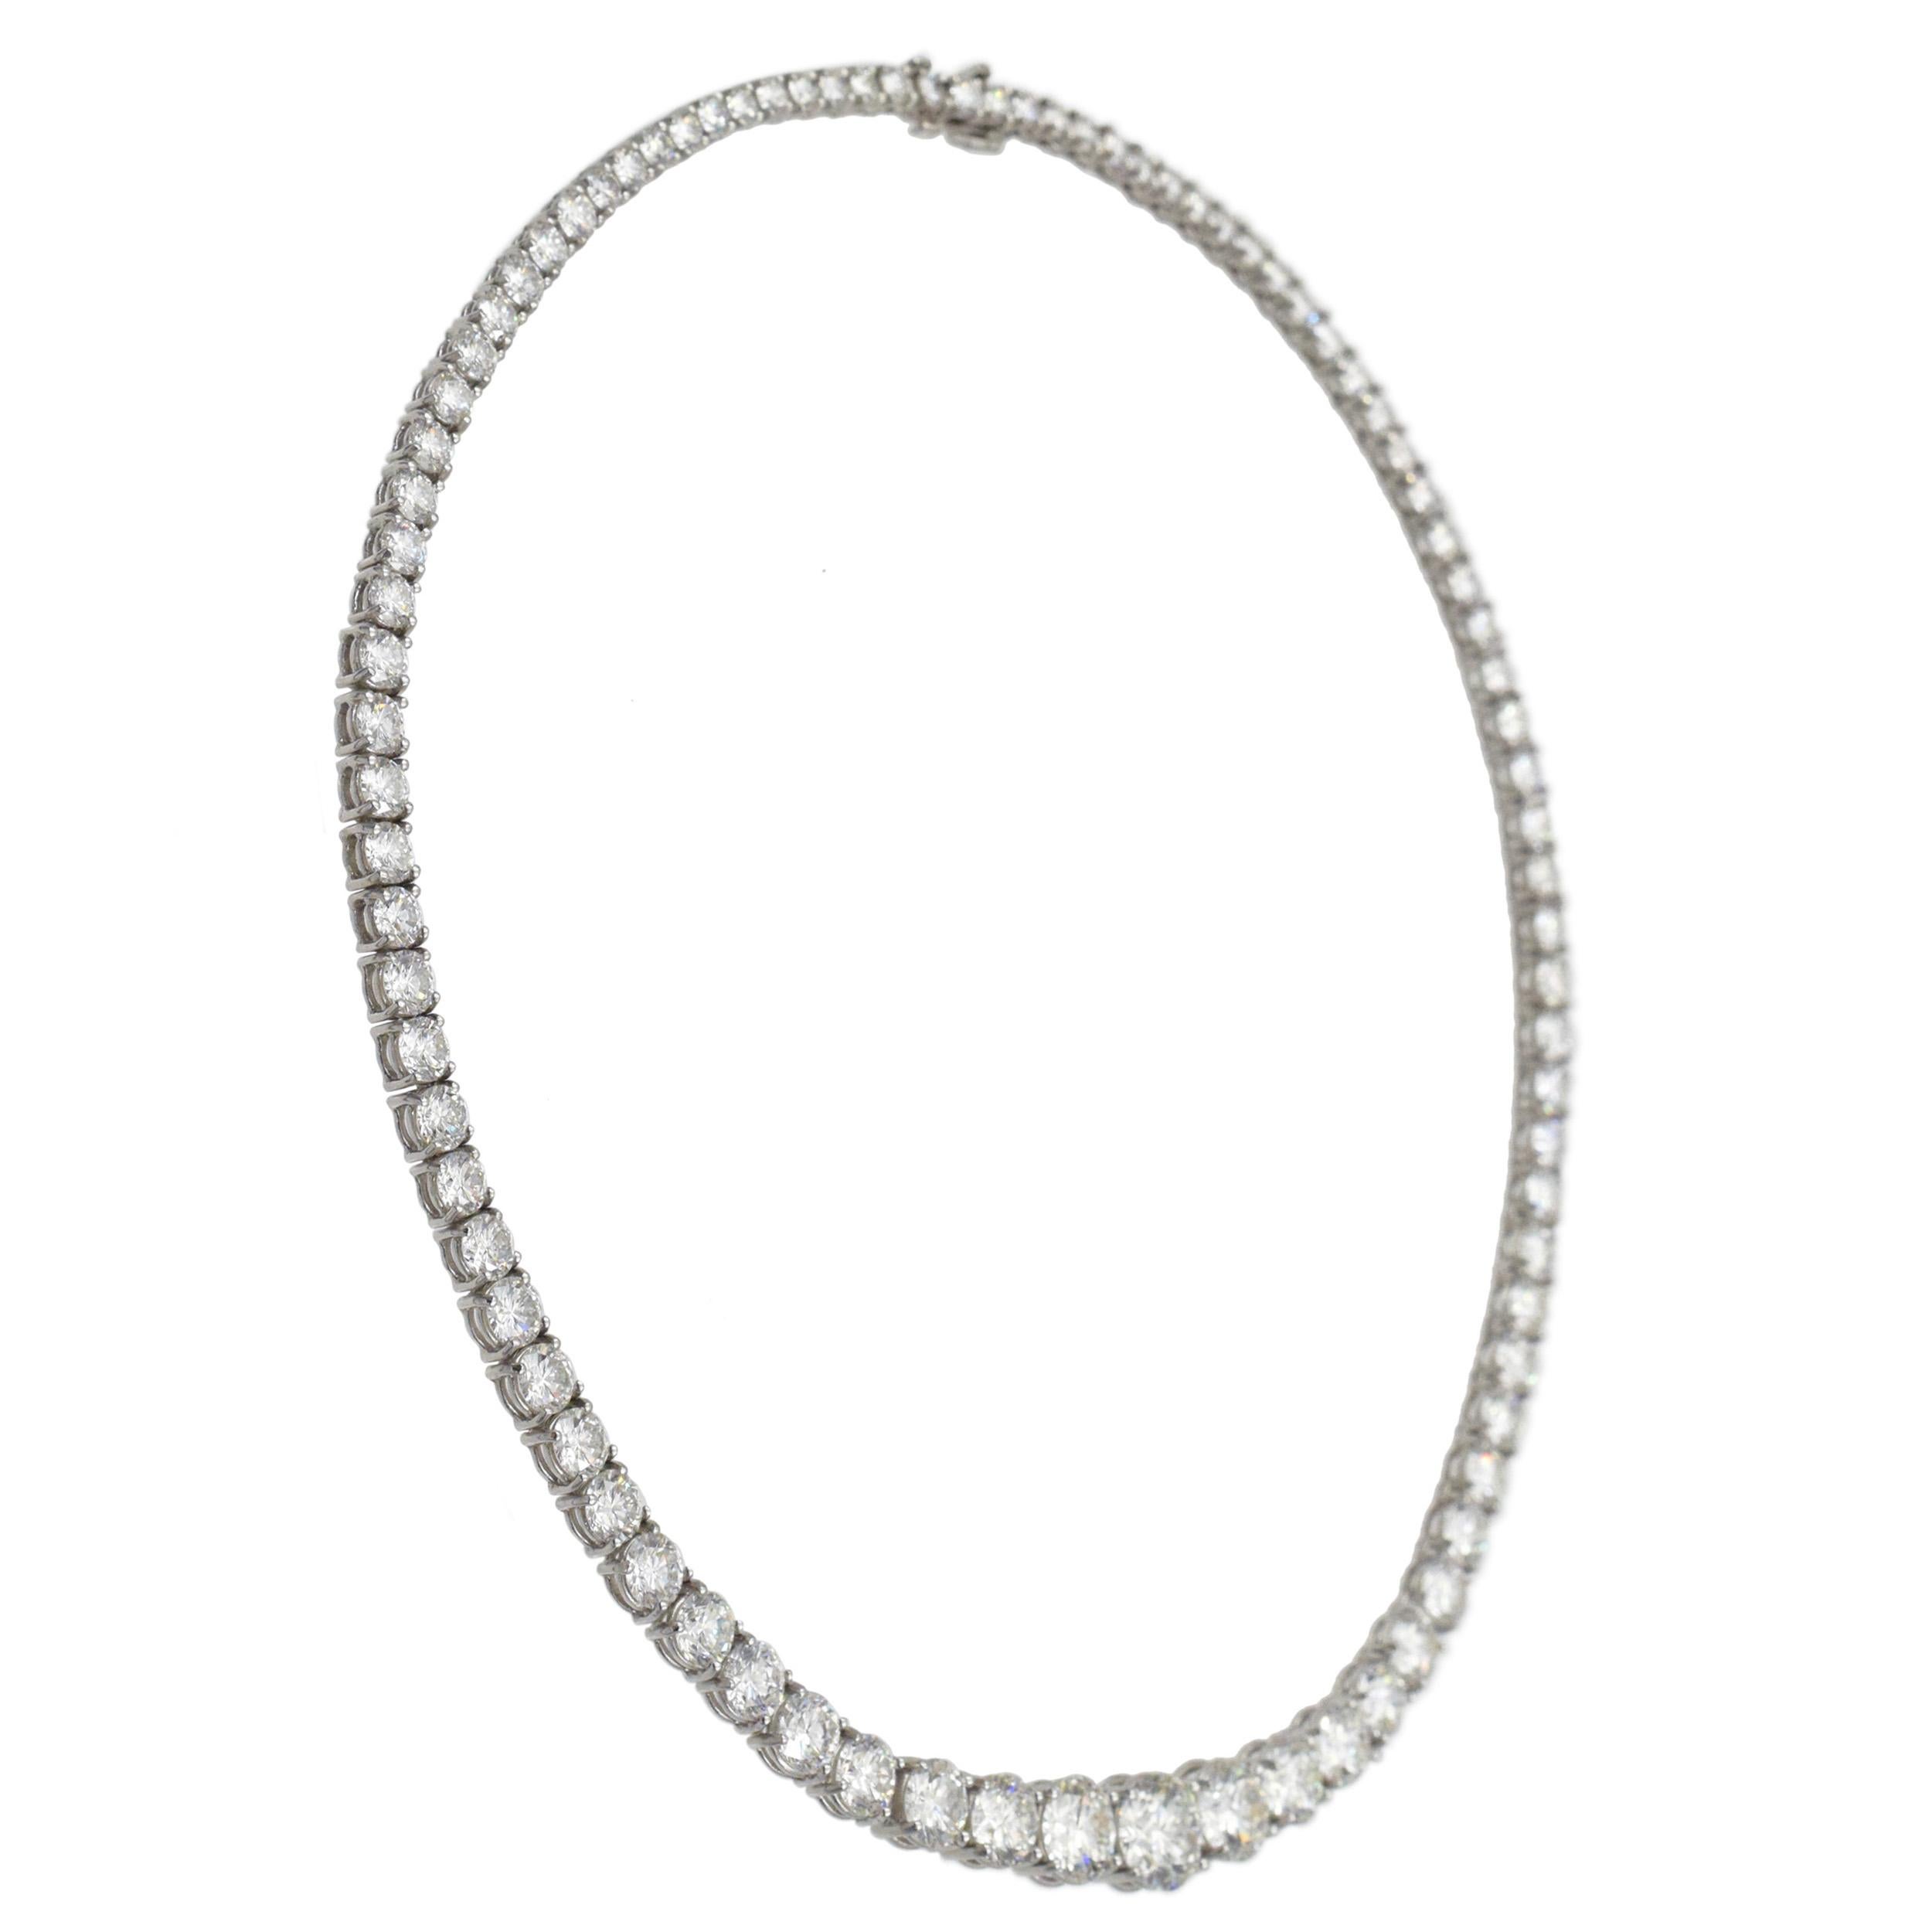 Tiffany & Co. Collier Riviera en platine et diamants 

Ce collier est composé d'un diamant rond central pesant 2,26 carats, de deux diamants ronds flanquant le centre pesant au total 2,92 carats, de 86 diamants ronds pesant 24,43 carats, d'un